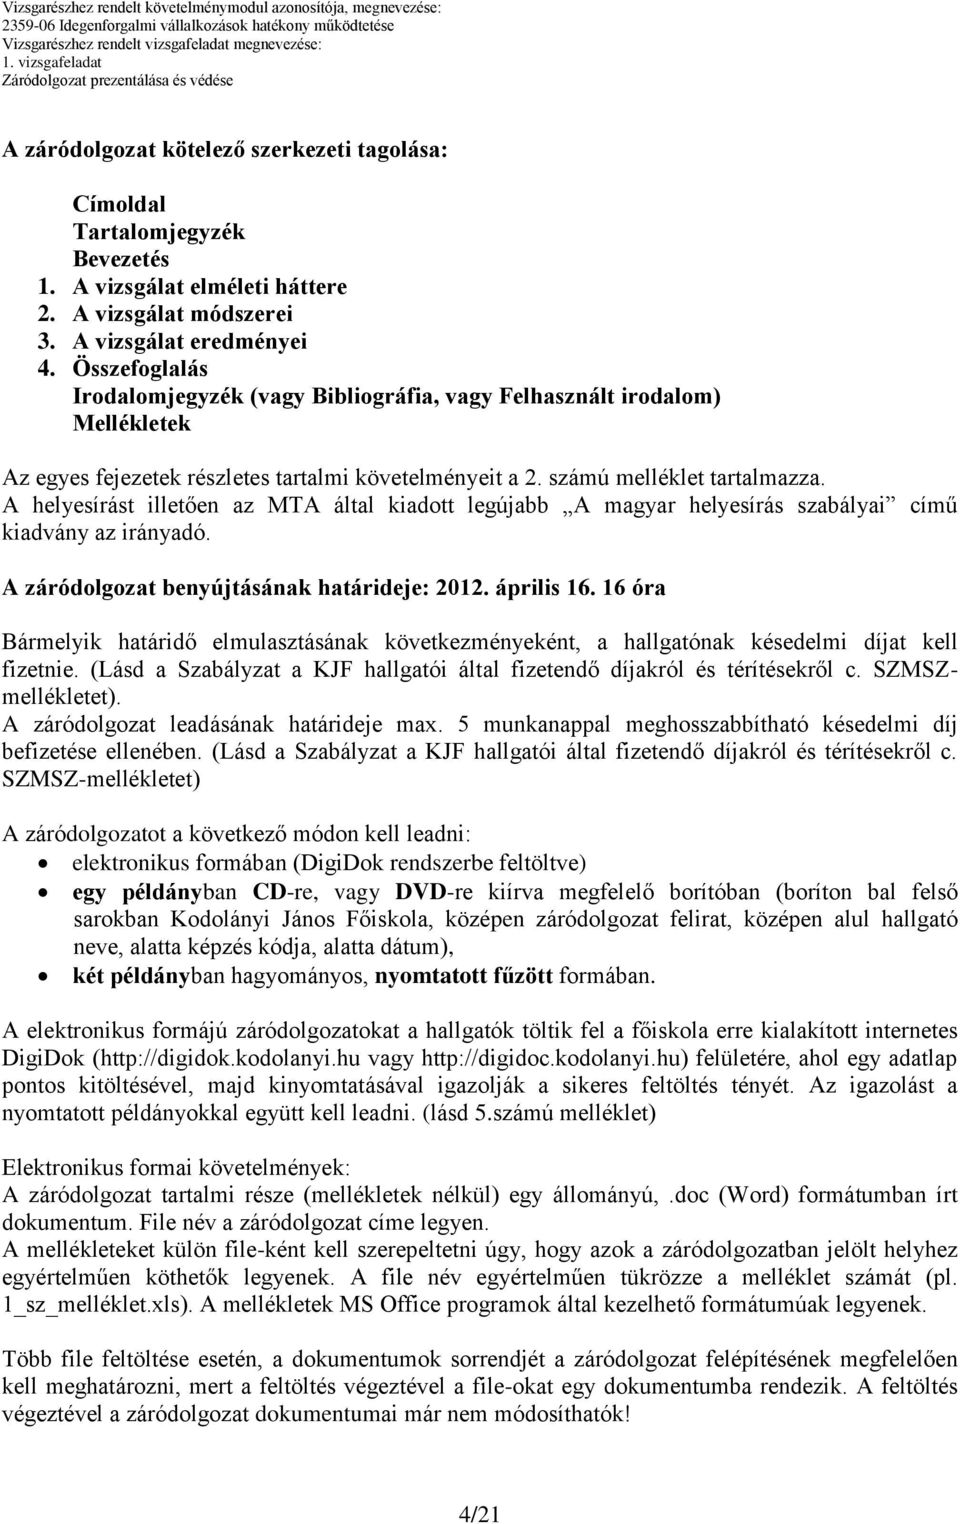 A helyesírást illetően az MTA által kiadott legújabb A magyar helyesírás szabályai című kiadvány az irányadó. A záródolgozat benyújtásának határideje: 2012. április 16.